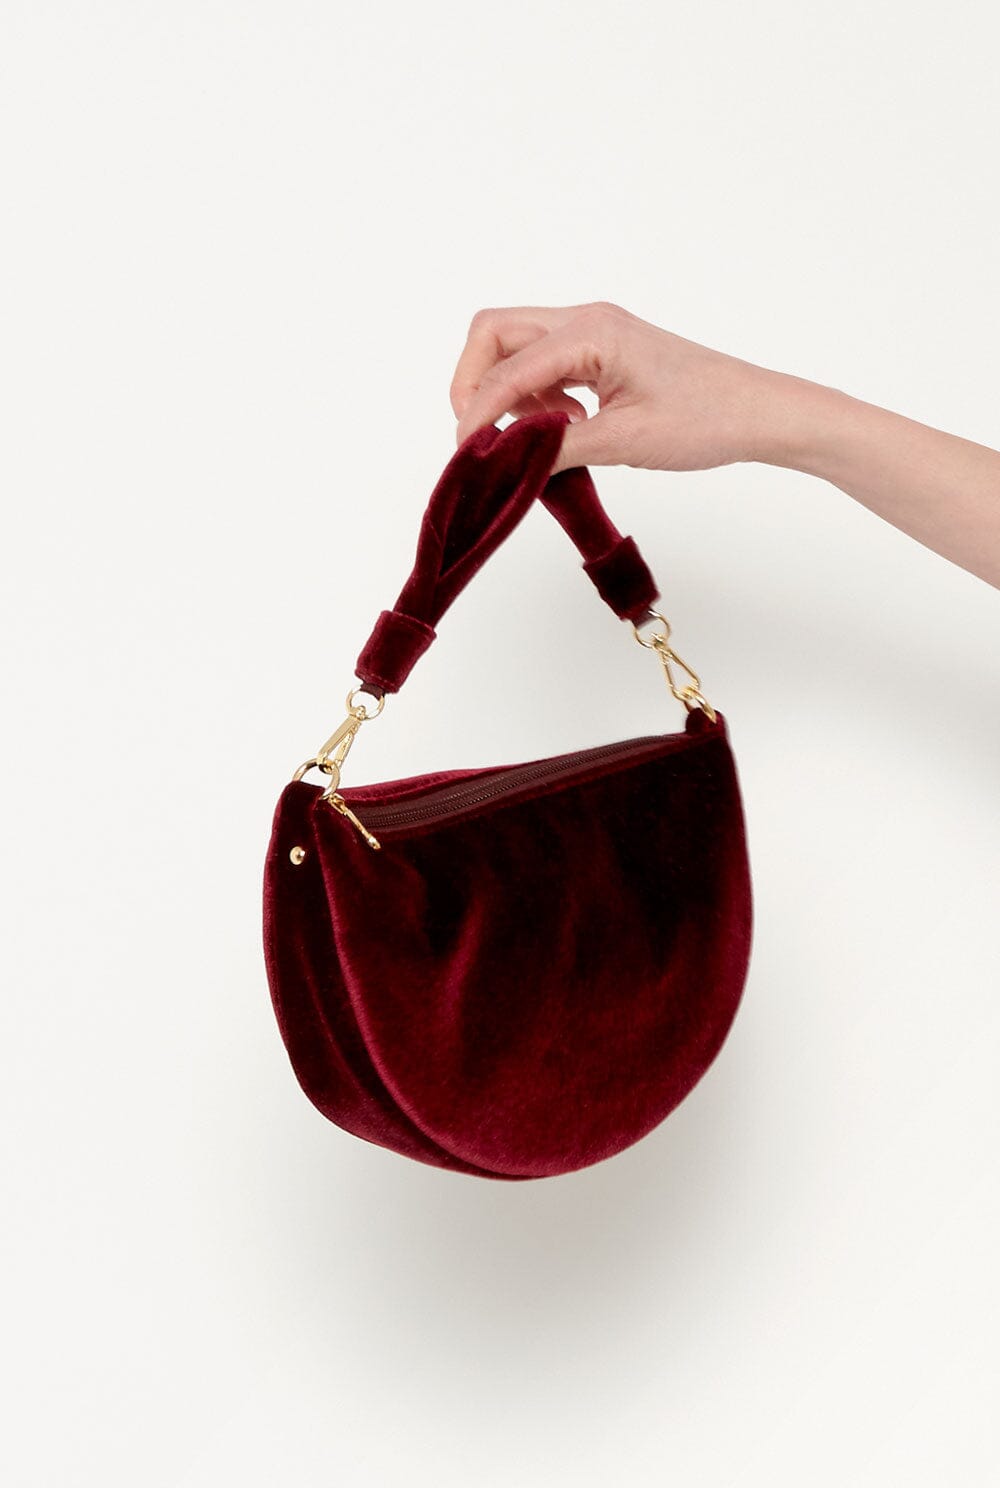 The Baby Gondola bag velvet Burgundy Hand bags The Bag Lab 